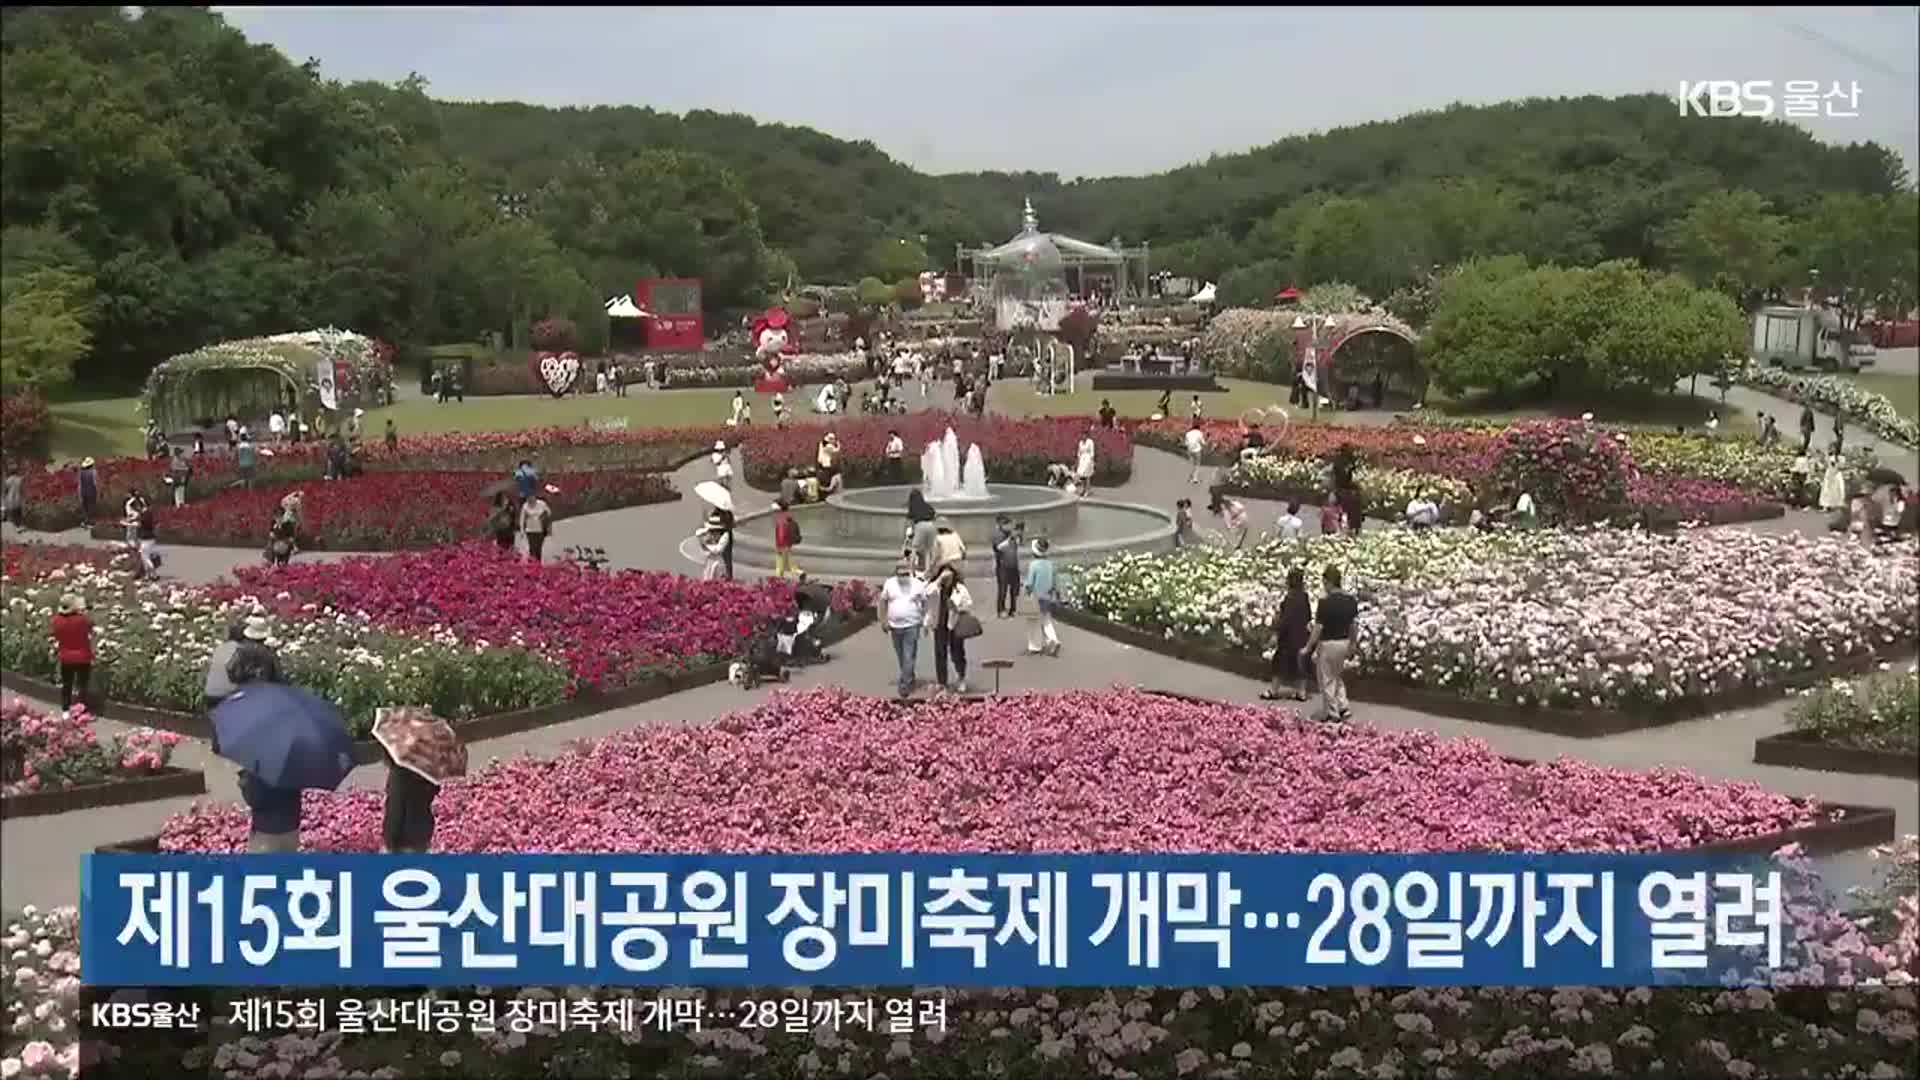 제15회 울산대공원 장미축제 개막…28일까지 열려